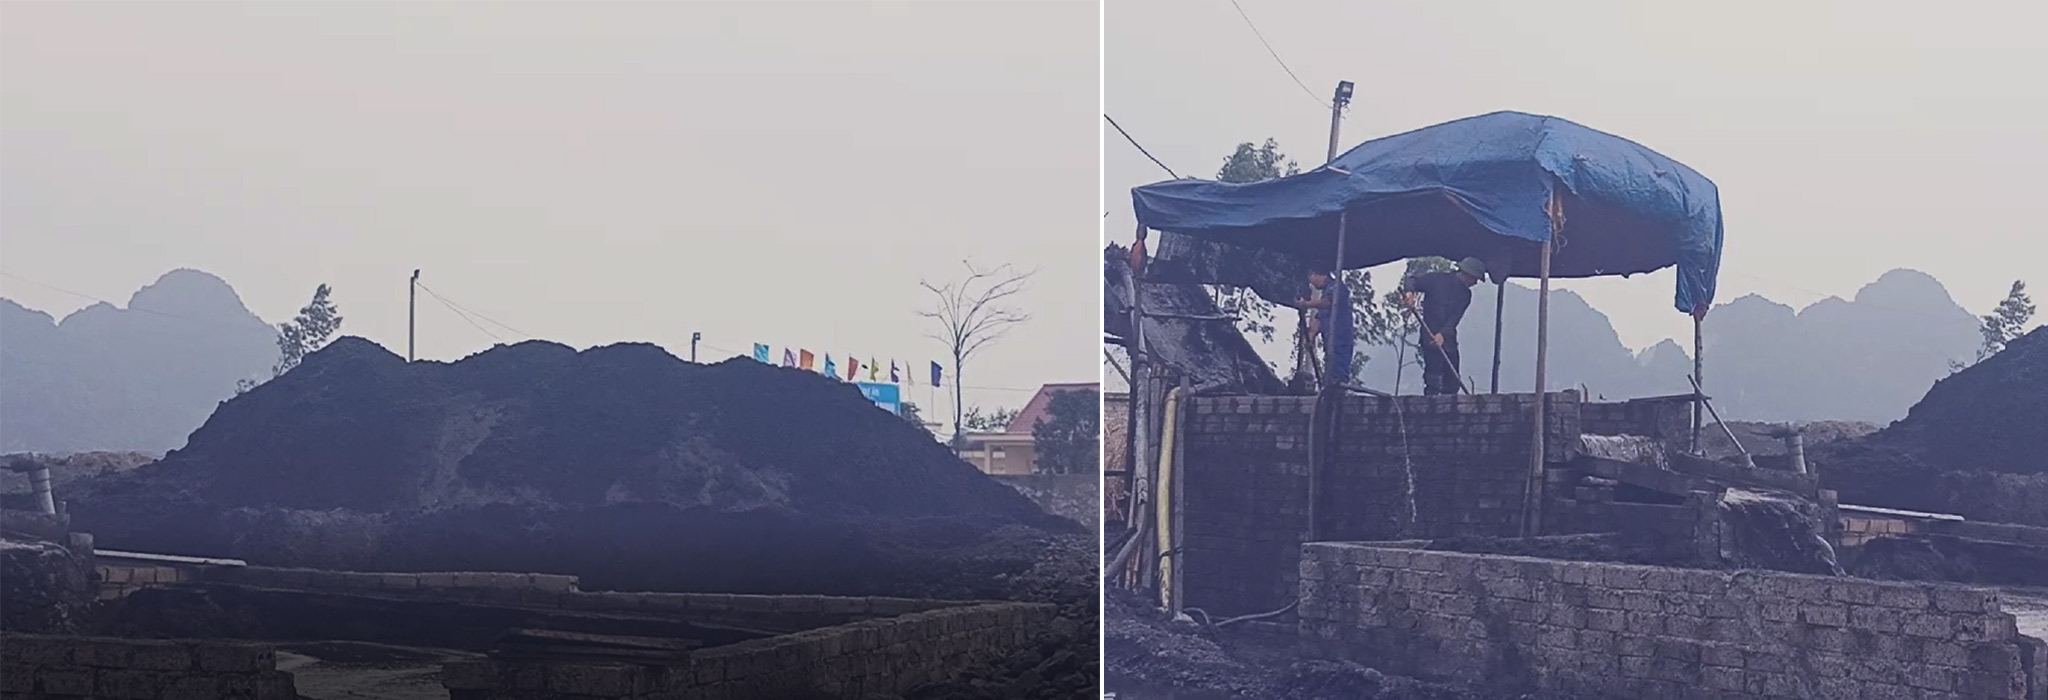 Một điểm sàng tuyển xít than ngay trong khu vực Cụm Công nghiệp Cẩm Thịnh, thành phố Cẩm Phả, tỉnh Quảng Ninh. (Ảnh: P.V/Vietnam+)